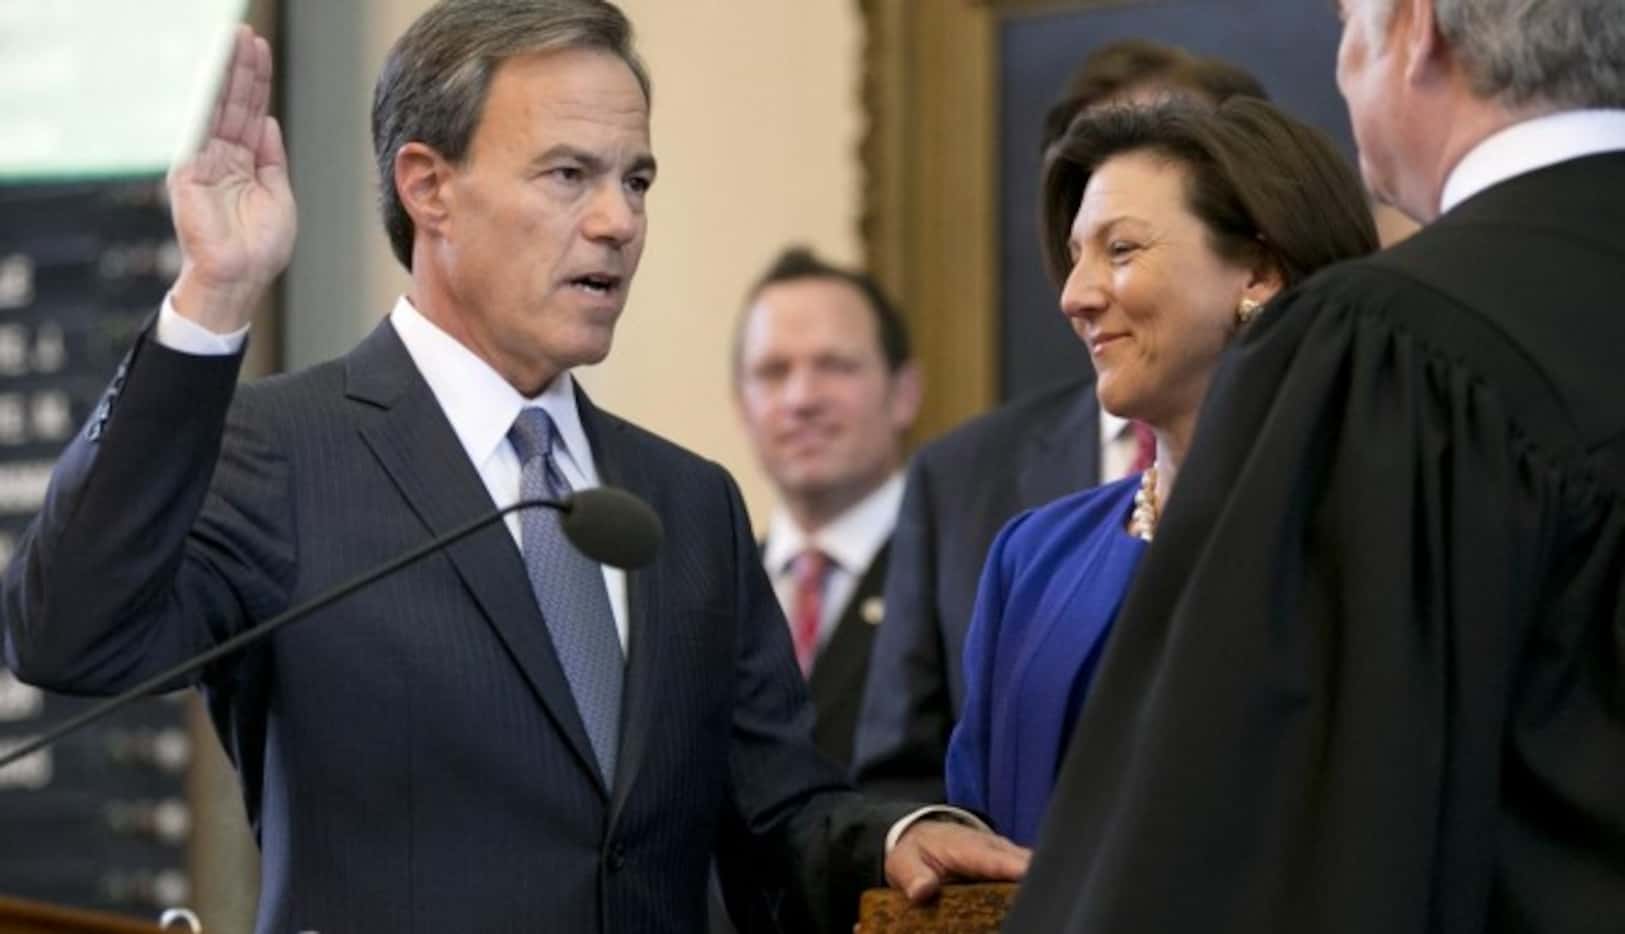 Joe Straus juramenta en la Cámara de Representantes de Texas. (AP/JAY JANNER)
